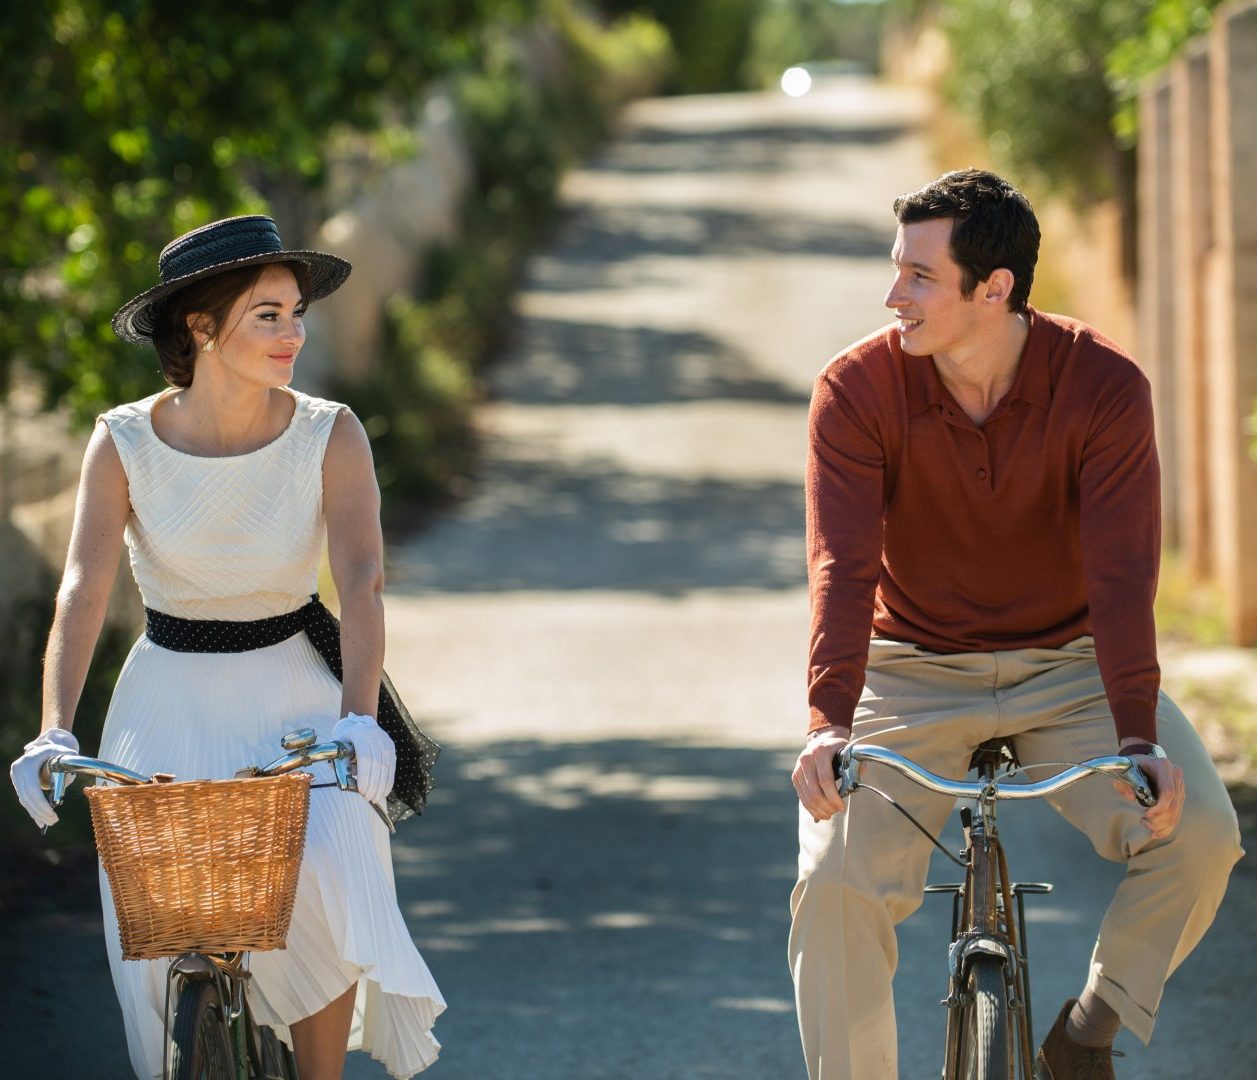 Filmausschnitt aus Eine Handvoll Worte. Eine Frau und ein Mann fahren sommerlich gekleidet auf einem Fahrrad.